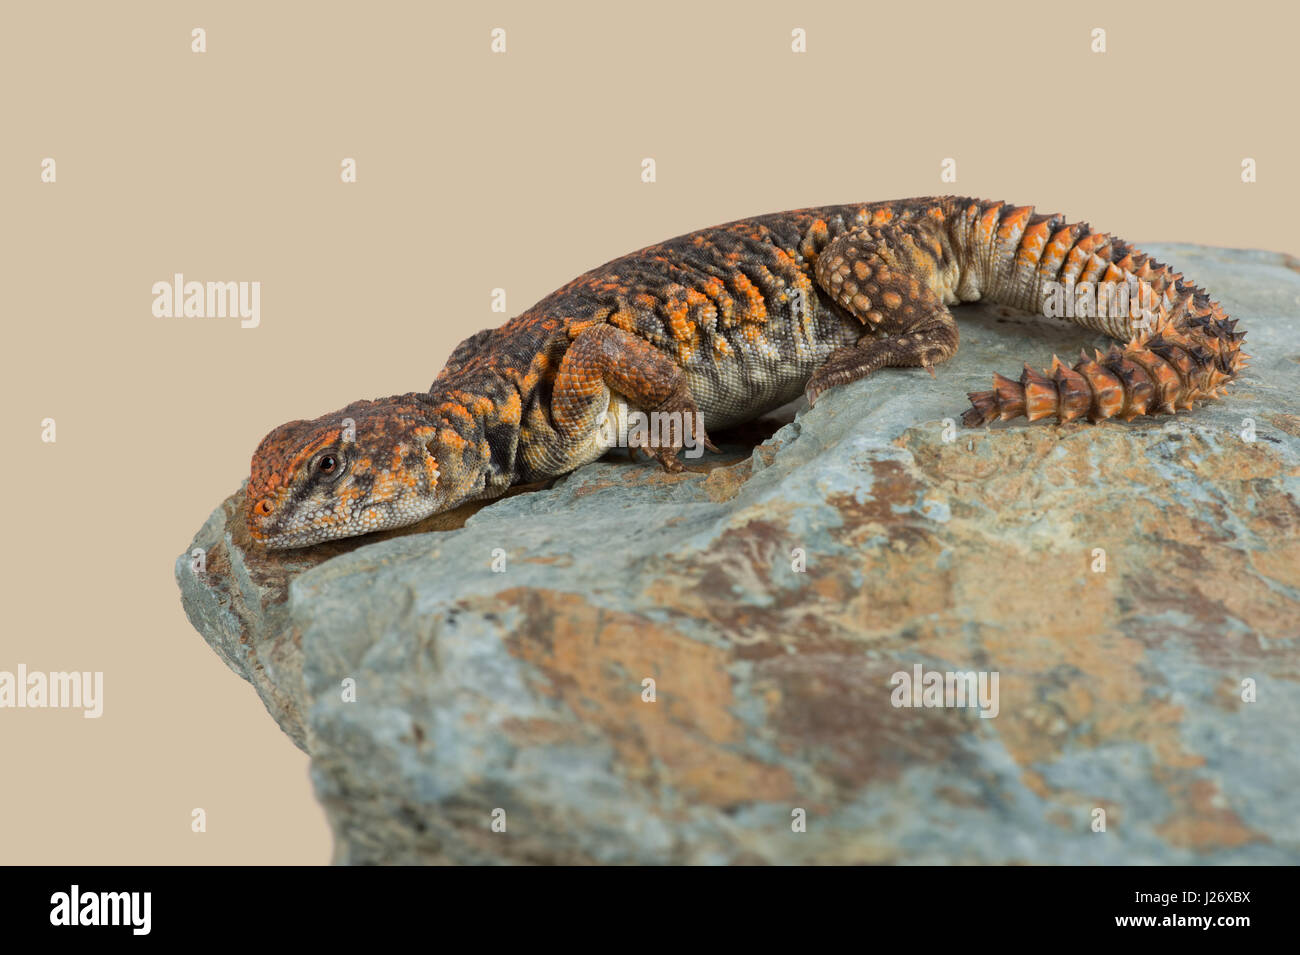 Saharan Spiny Tailed Lizard (Uromastyx geyri) Stock Photo